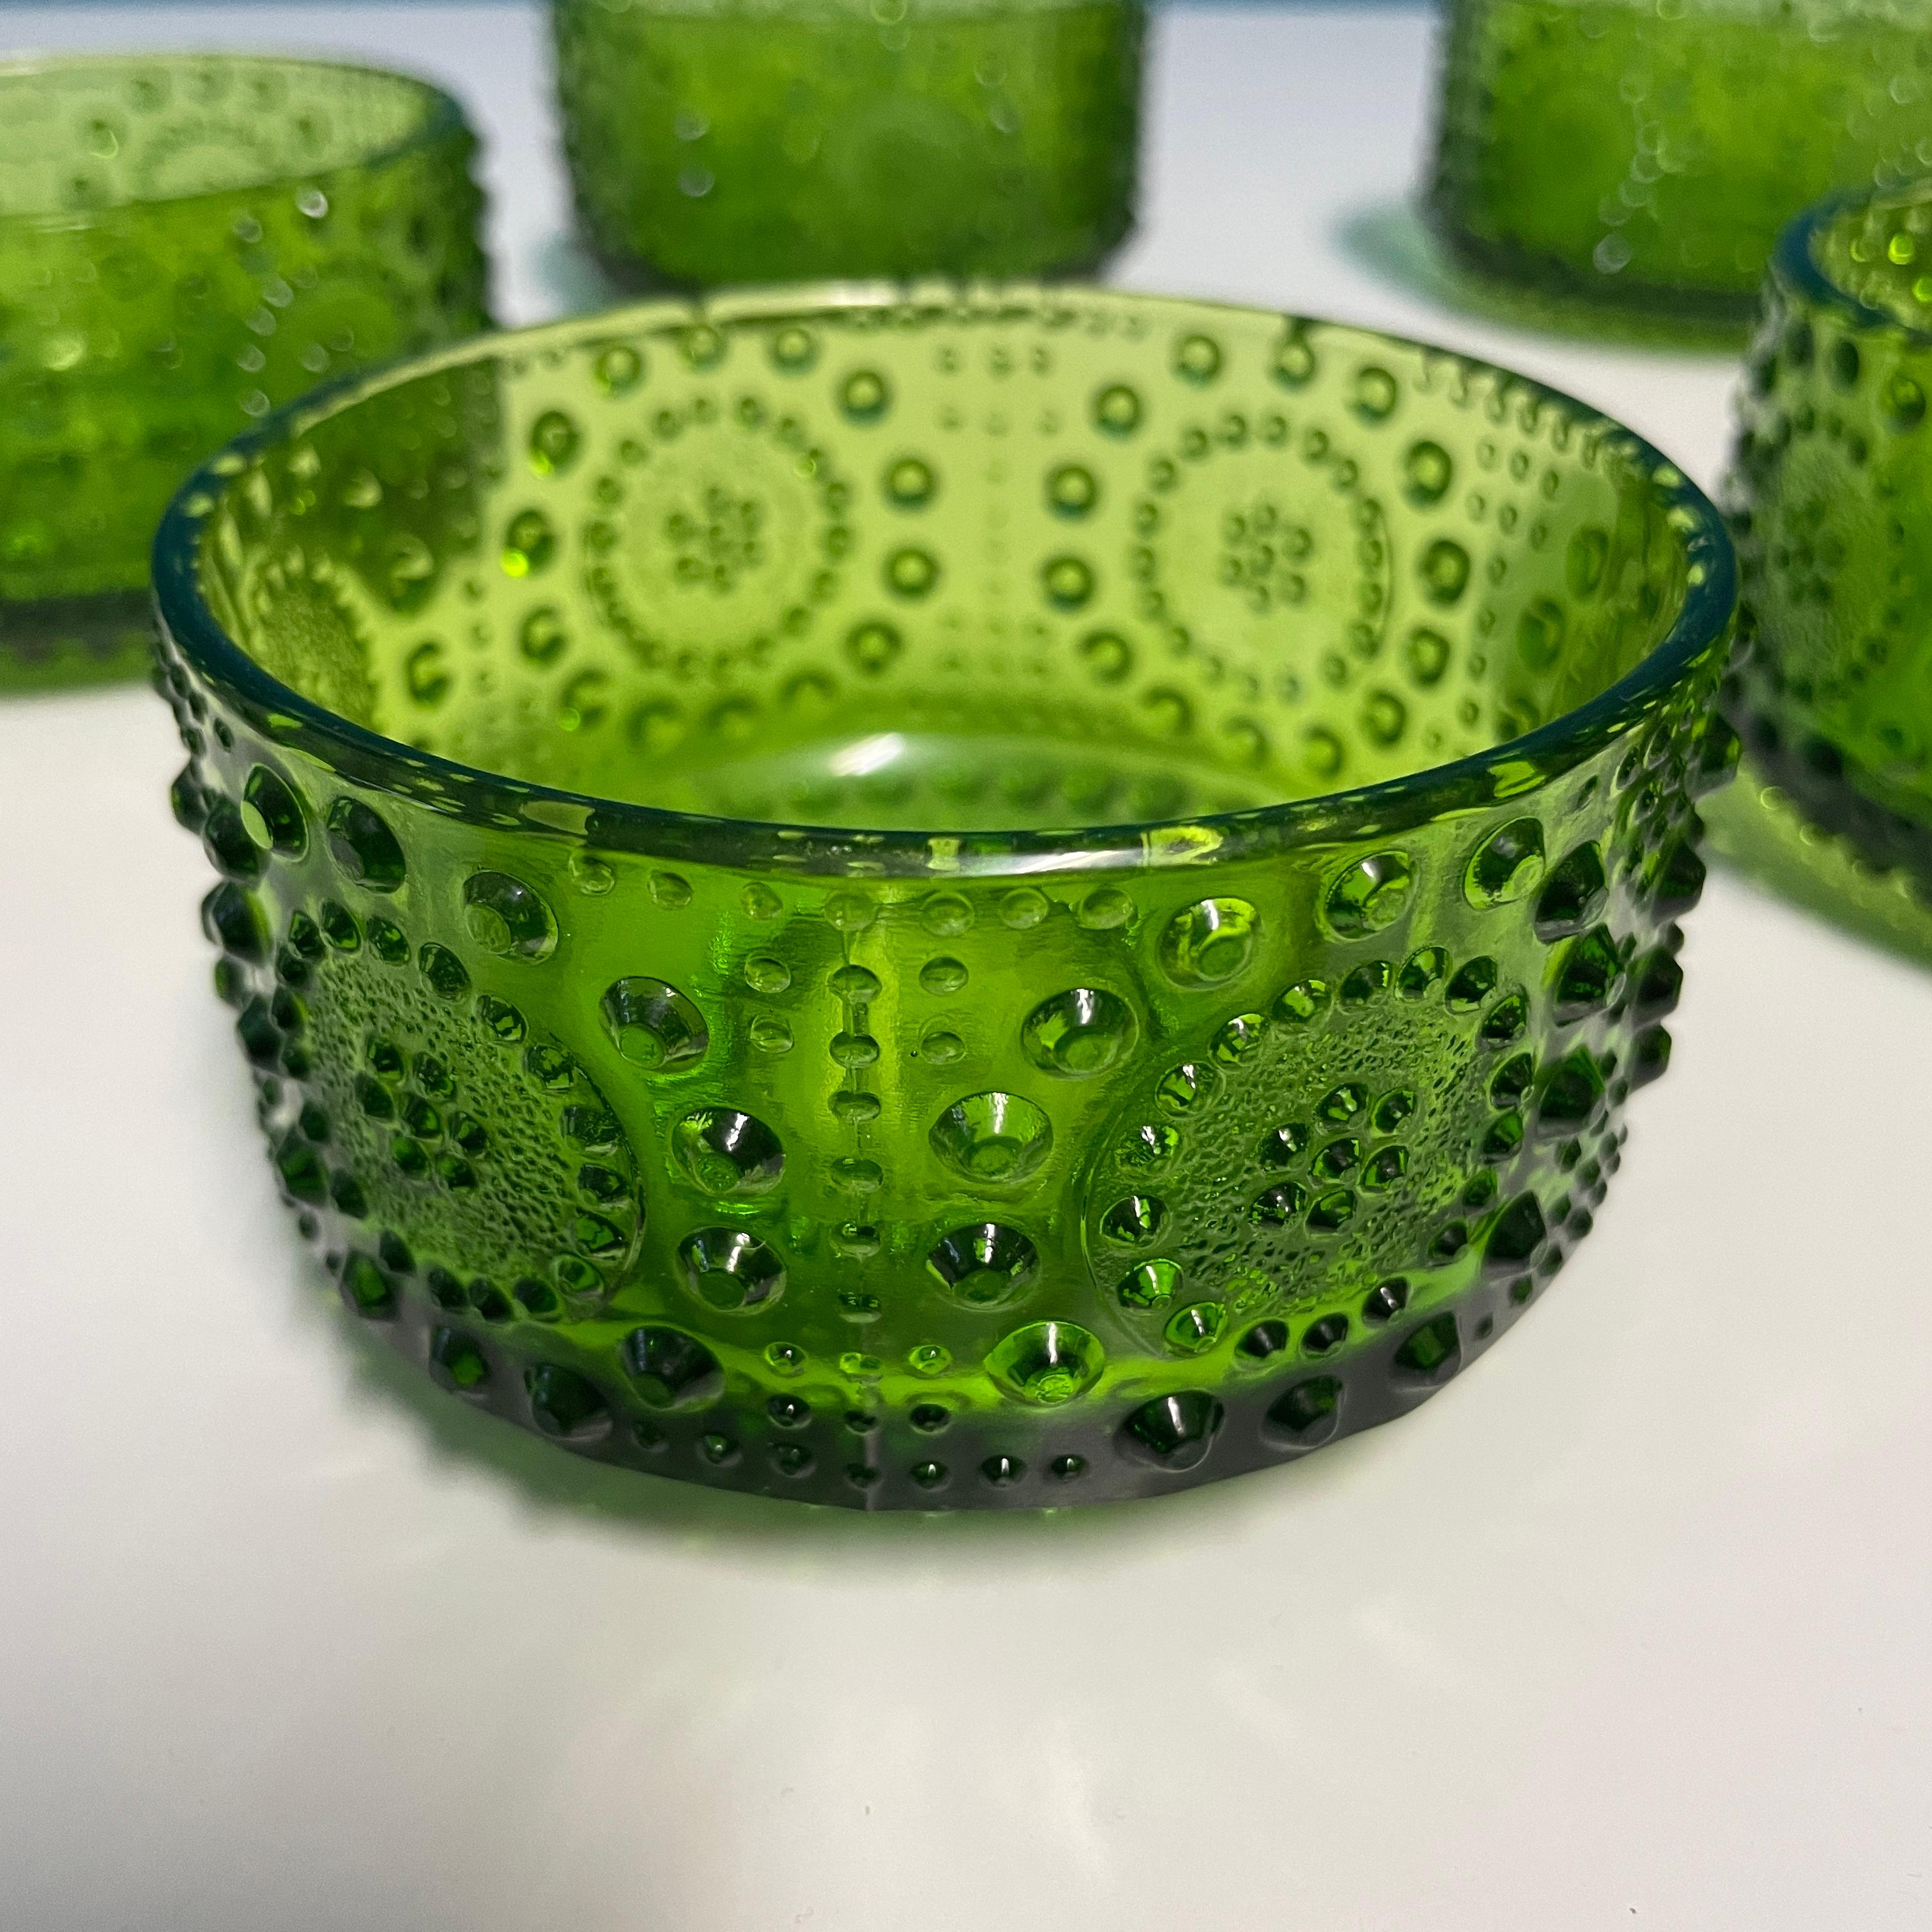 Die Dessertschale Grapponia der Glashütte Riihimäki gehört zu der von Nanny Still Ende der 1960er Jahre entworfenen Serie Grapponia.
Diese grünen Schalen sind mit einem schönen Hobnail-Muster verziert und eignen sich perfekt, um Ihrem gedeckten